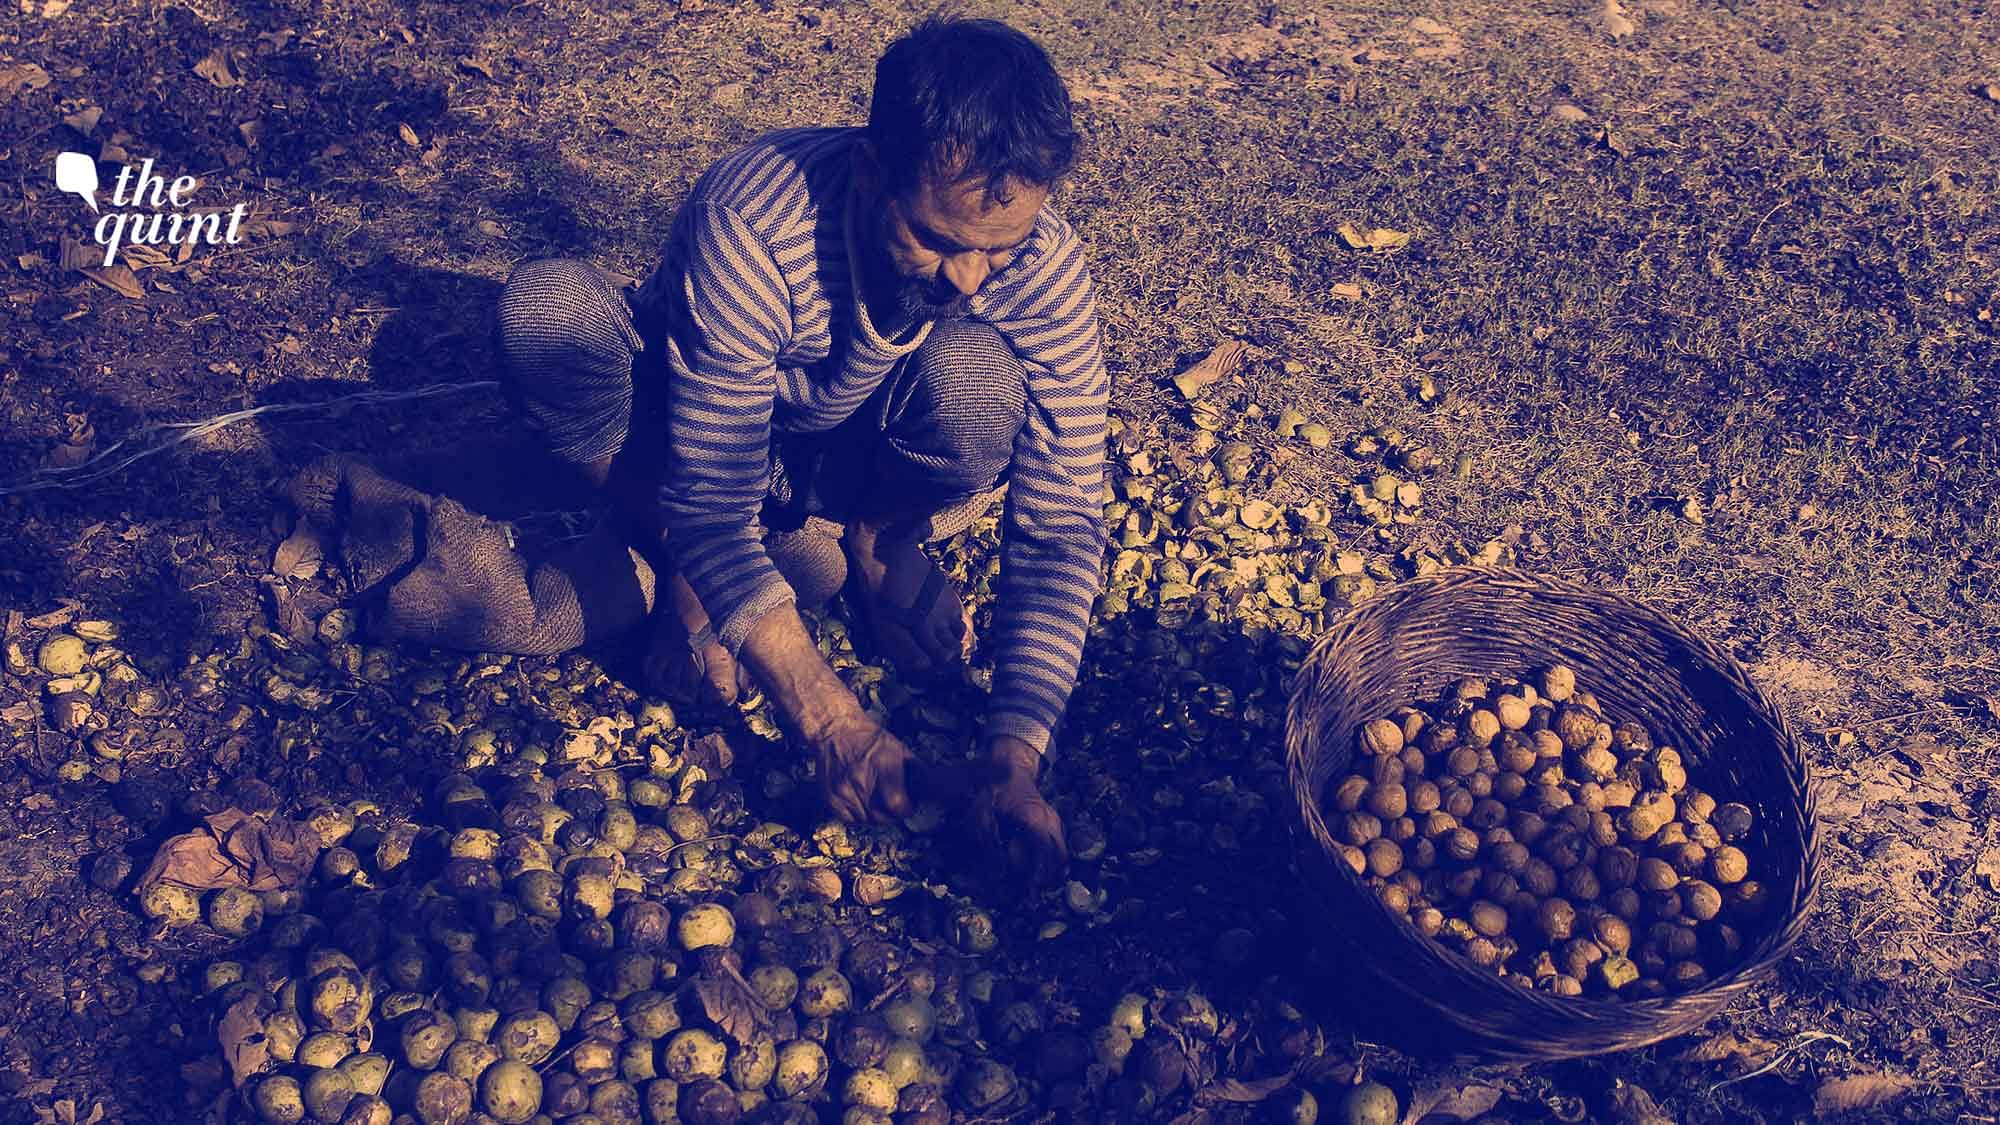 Image of a Kashmiri walnut farmer used for representational purposes.